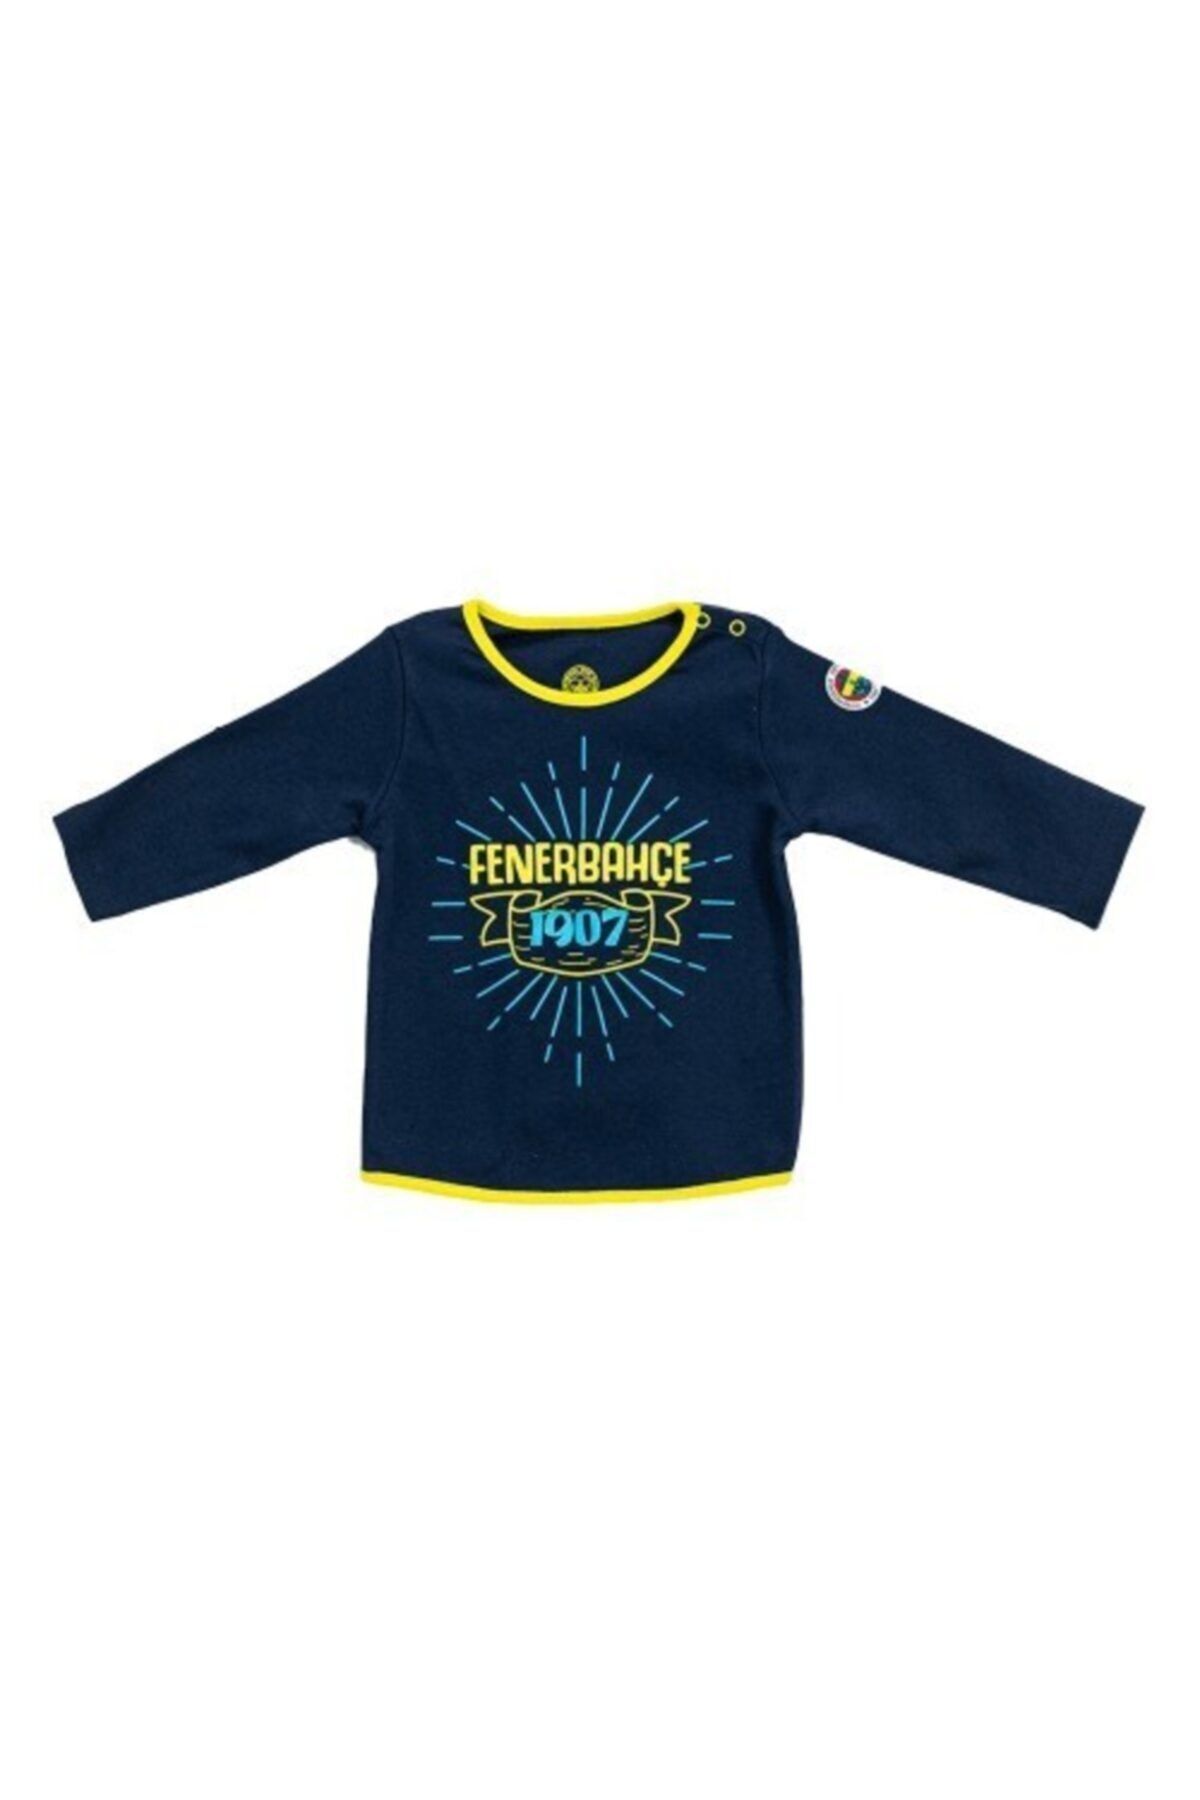 Fenerbahçe Lisanslı Unisex Bebek Lacivert Uzun Kollu T-shirt